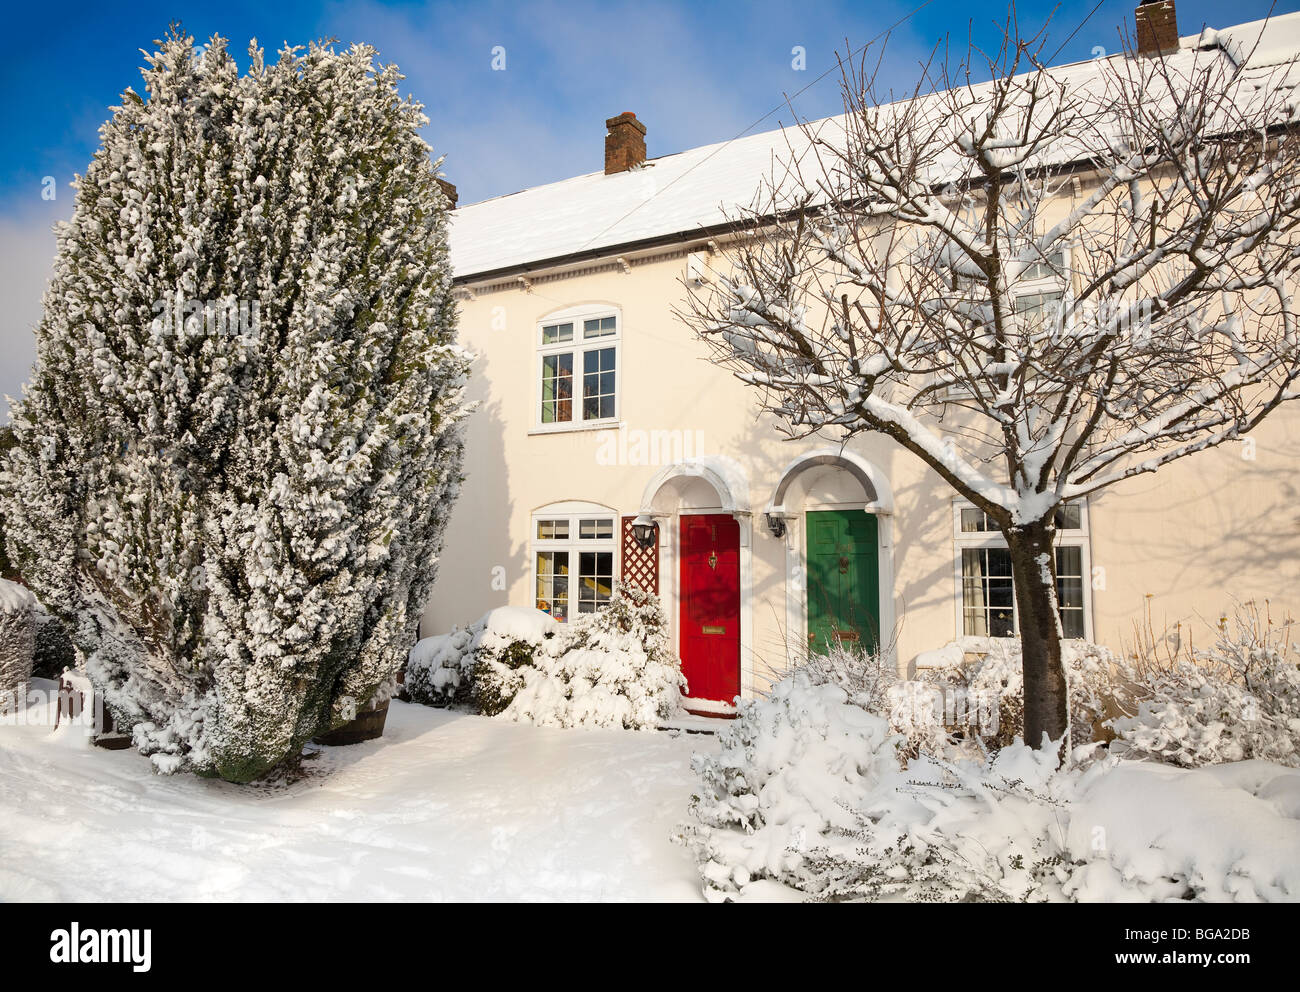 Il pittoresco villaggio di scena di neve, Bedfordshire Regno Unito, porte colorate, caldo sole invernale. Foto Stock